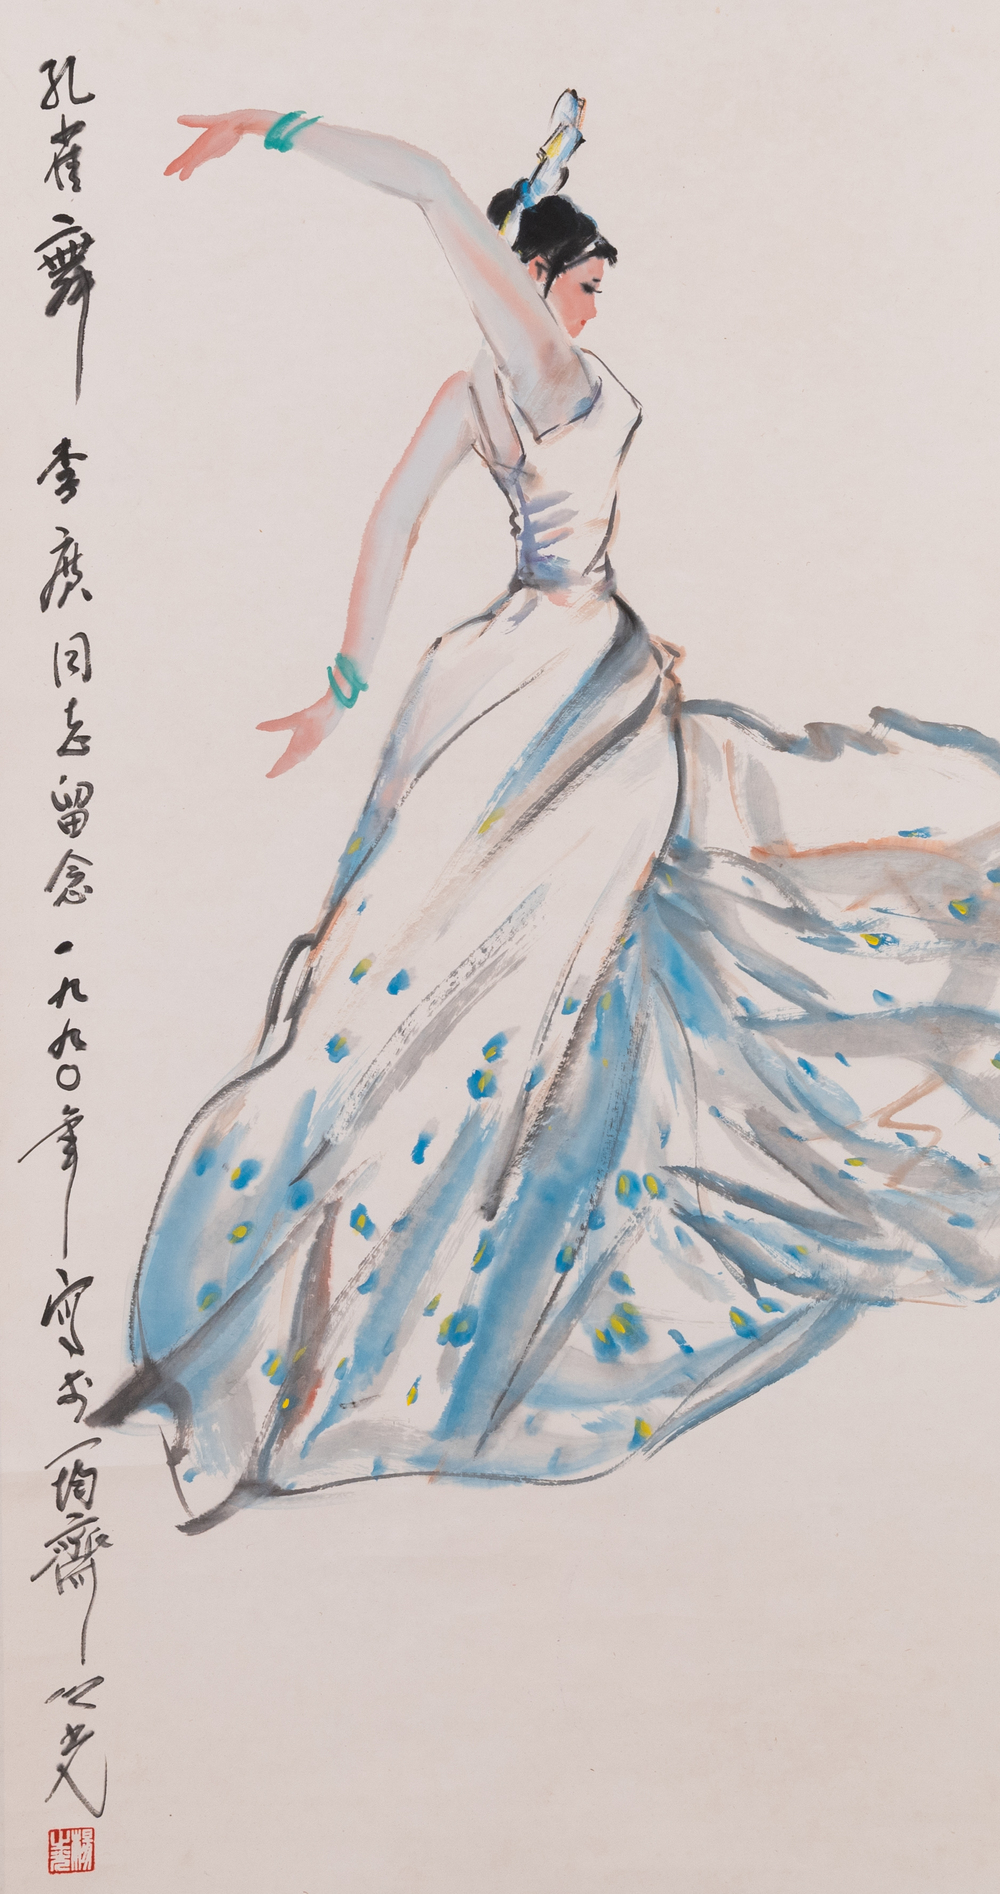 Yang Zhiguang 杨之光 (1930-2016): 'Danser', inkt en kleur op papier, gedateerd 1990